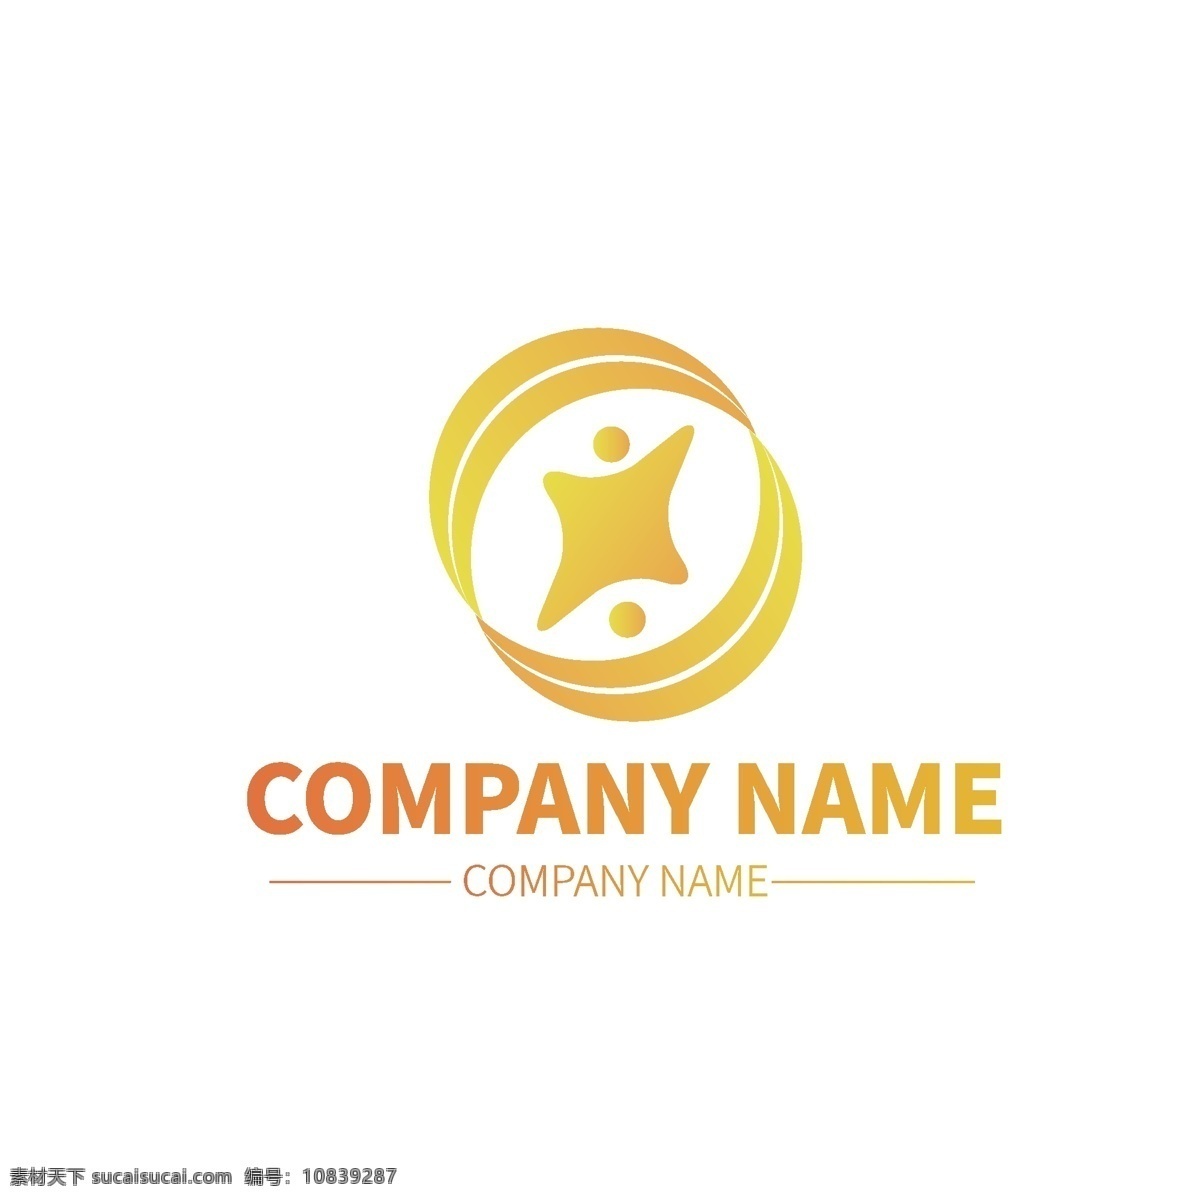 拍照 相机 公司 企业 形状 商标 logo 标示 通用logo 图案logo 元素logo 企业标识 ins拍照 logo设计